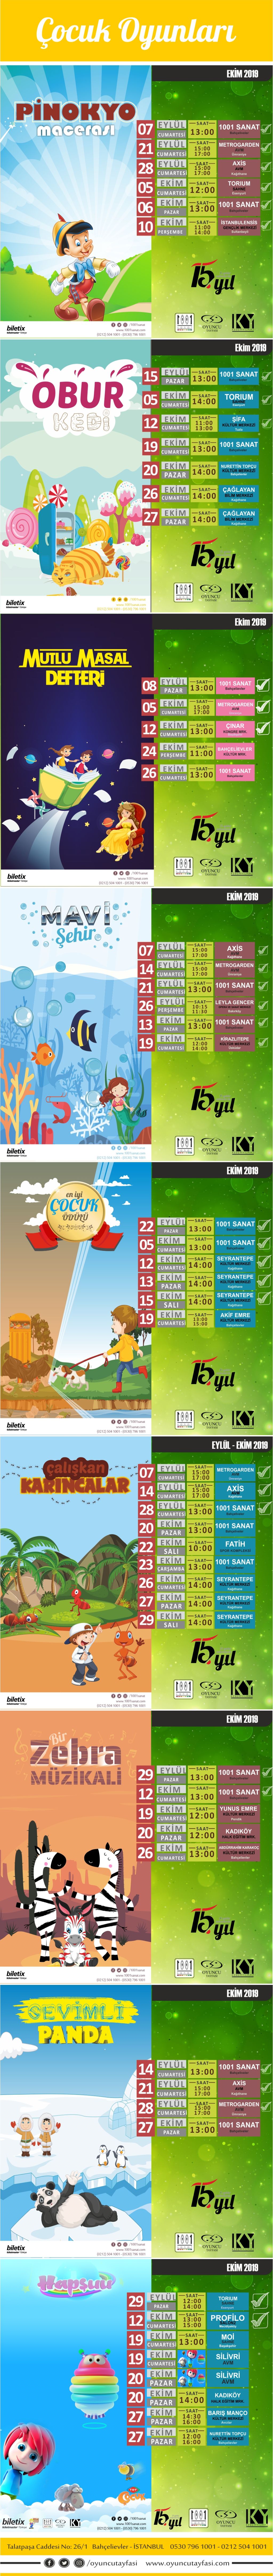 Oyuncu Tayfası Eylül - Ekim Çocuk Oyunu Programı